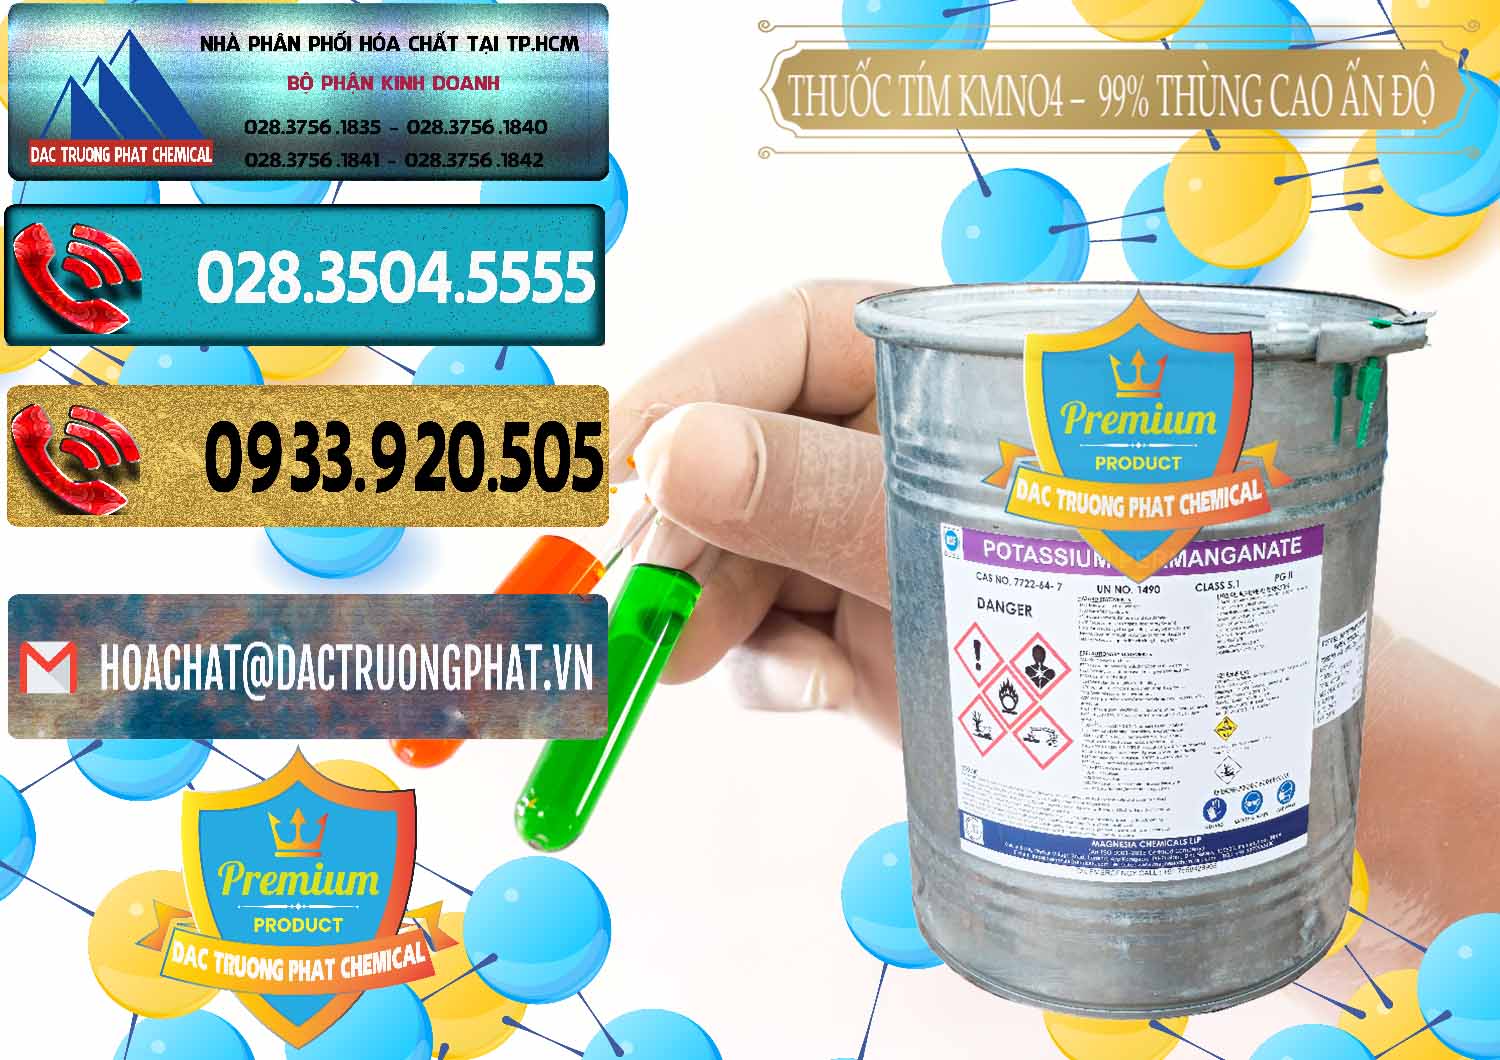 Nơi cung cấp - bán Thuốc Tím - KMNO4 Thùng Cao 99% Magnesia Chemicals Ấn Độ India - 0164 - Nhà cung cấp & phân phối hóa chất tại TP.HCM - hoachatdetnhuom.com